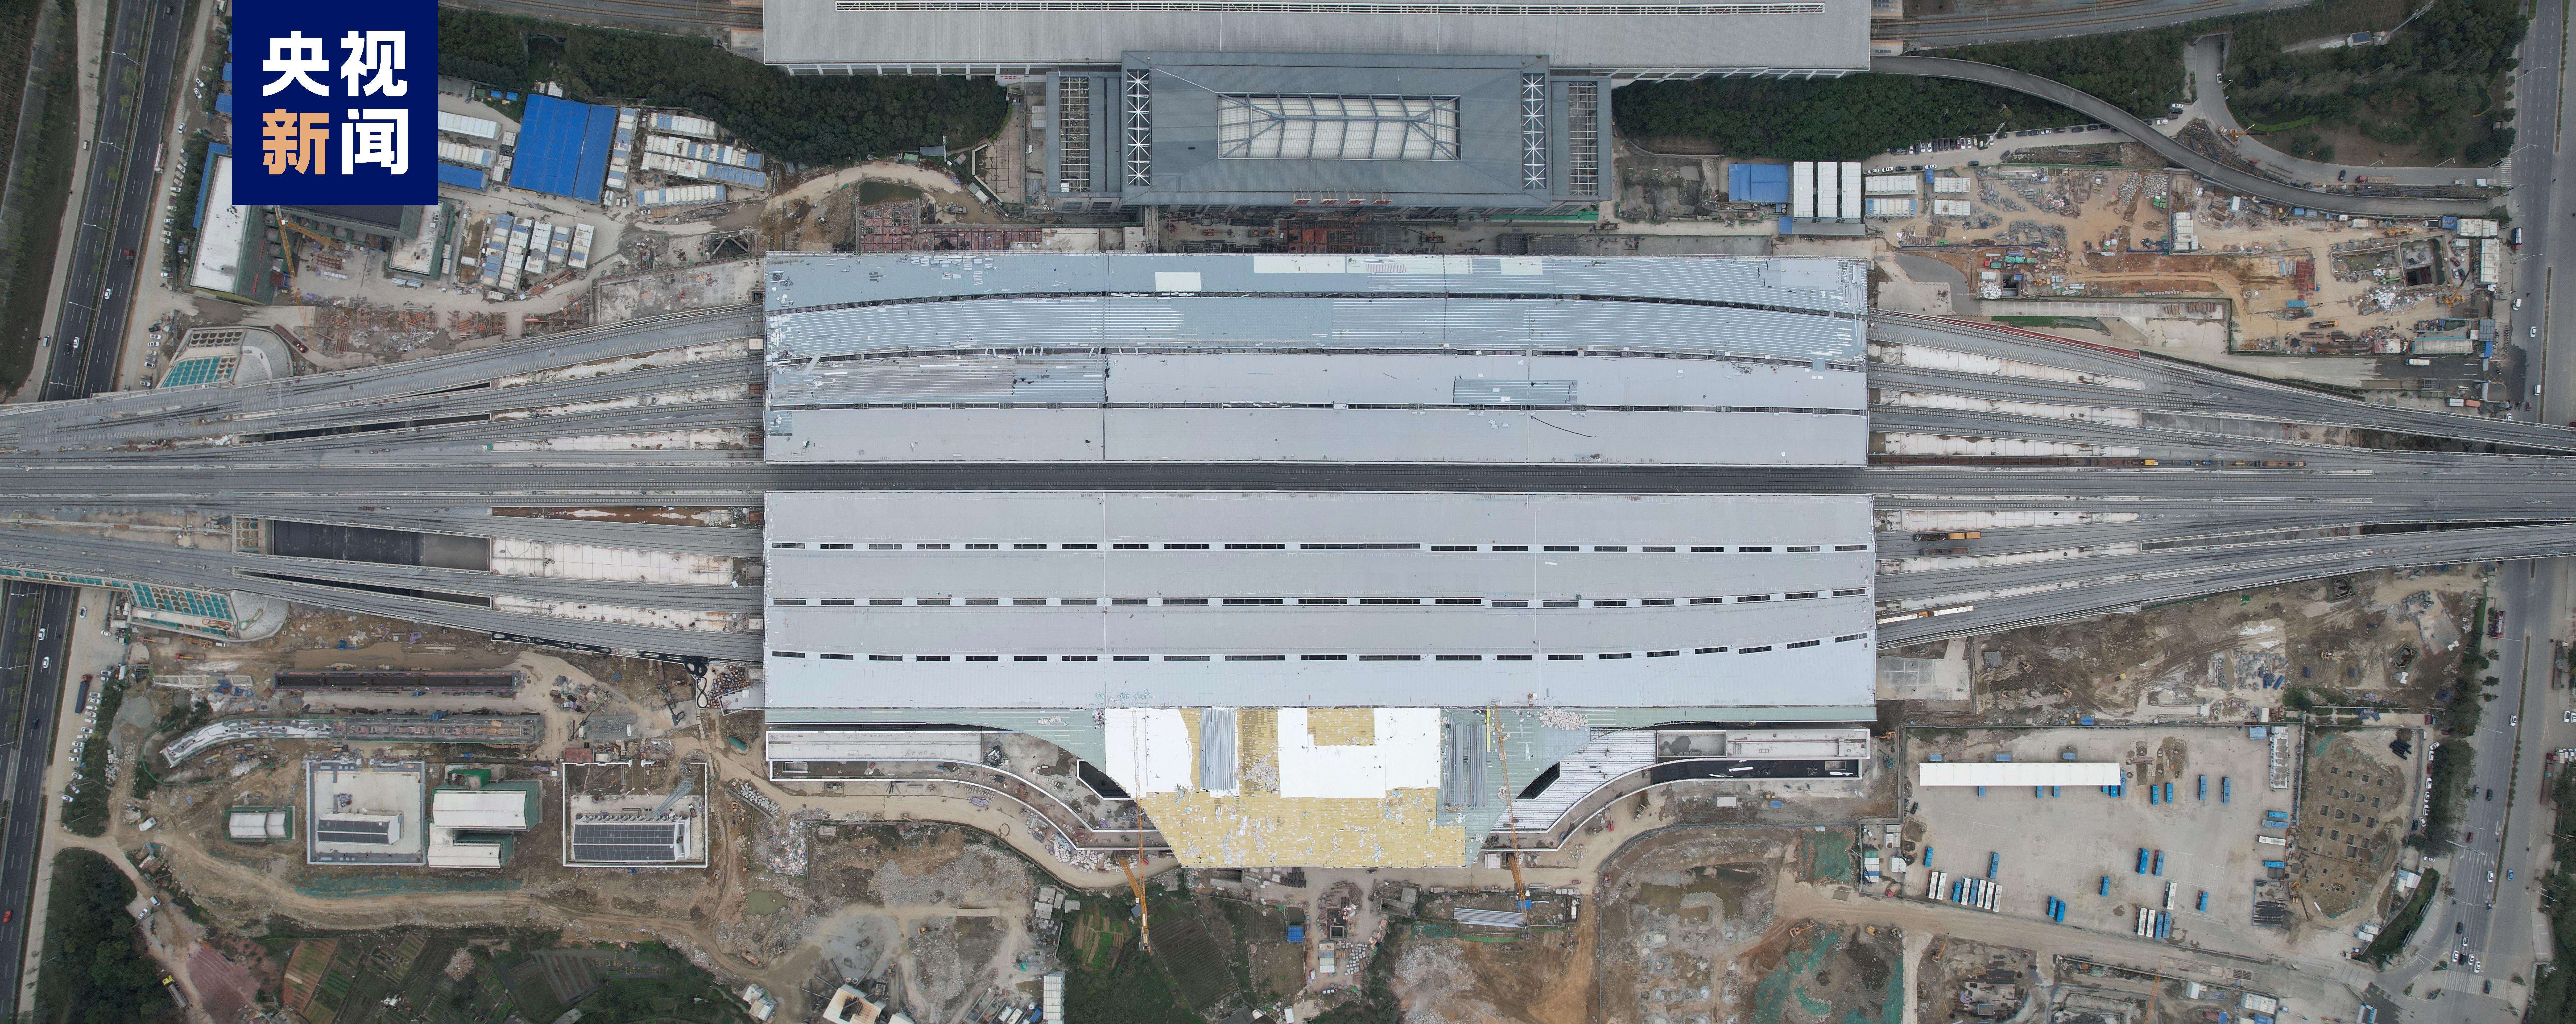 福厦高铁福州火车南站主体结构全面完成 新老站房将实现有机整合